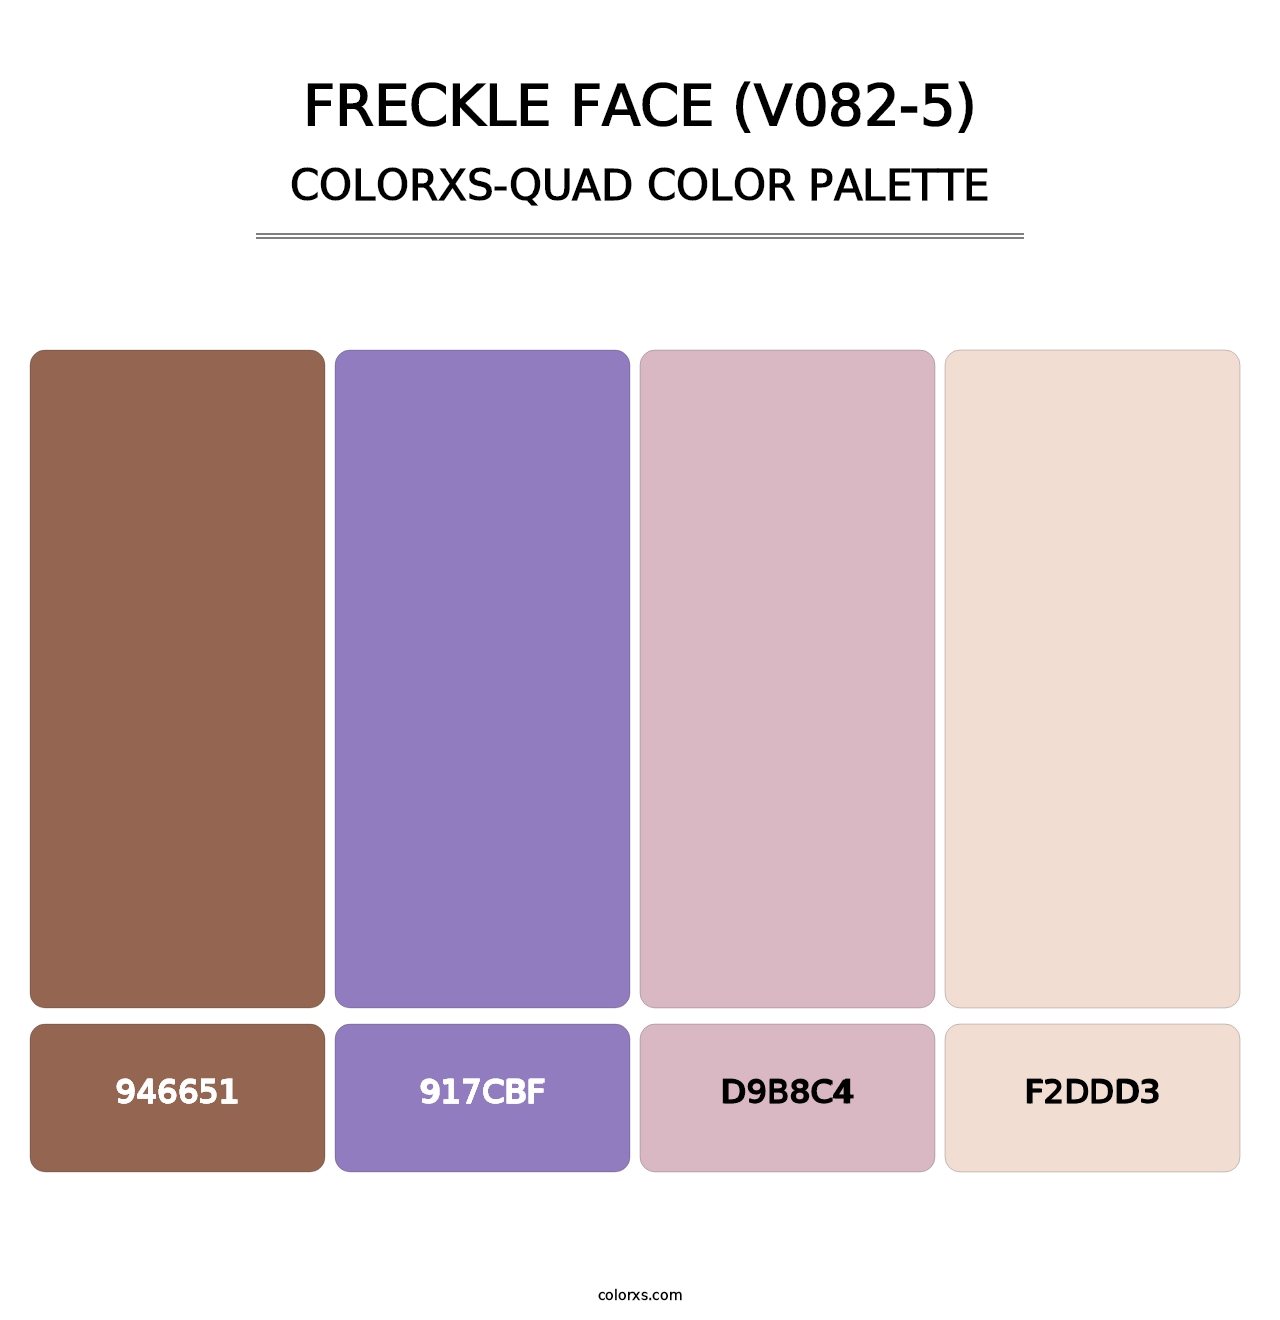 Freckle Face (V082-5) - Colorxs Quad Palette